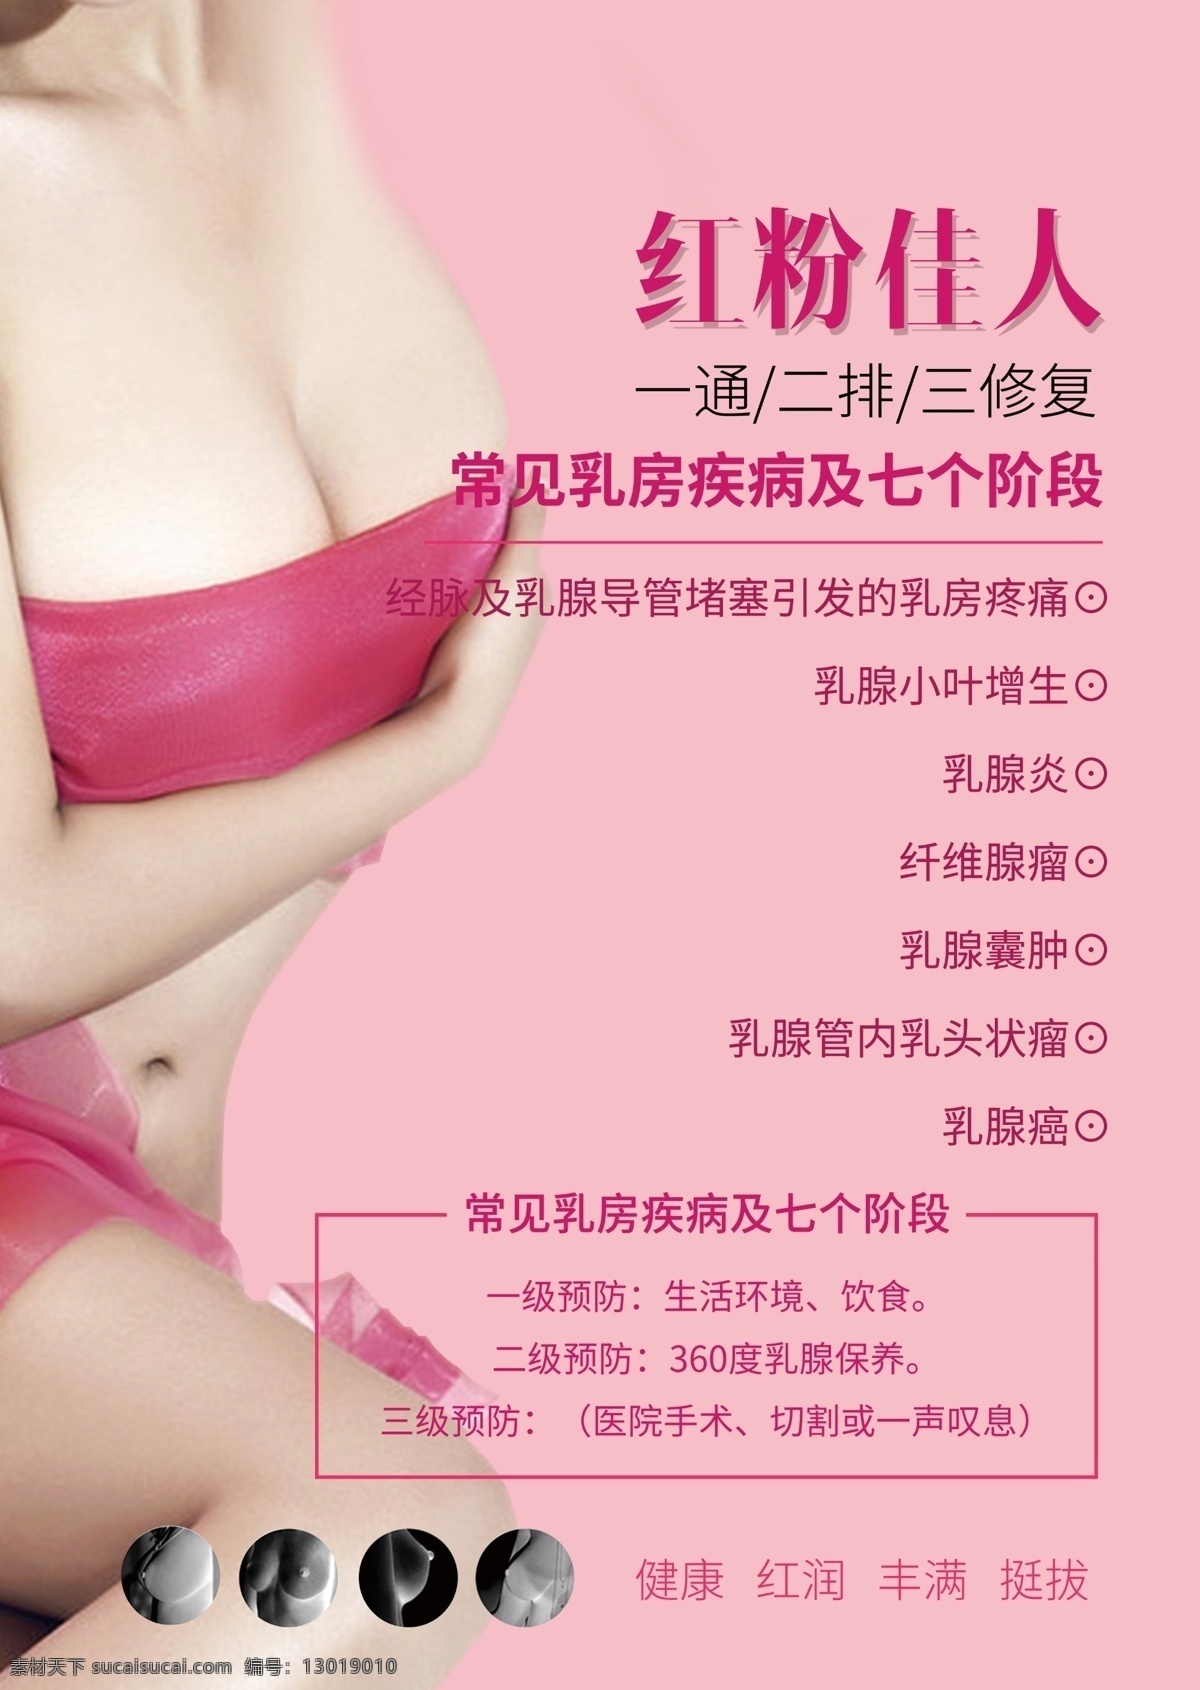 美容院 红粉 佳人 乳腺 养生 护理 海报 排毒 修复 健康 挺拔 乳房疾病